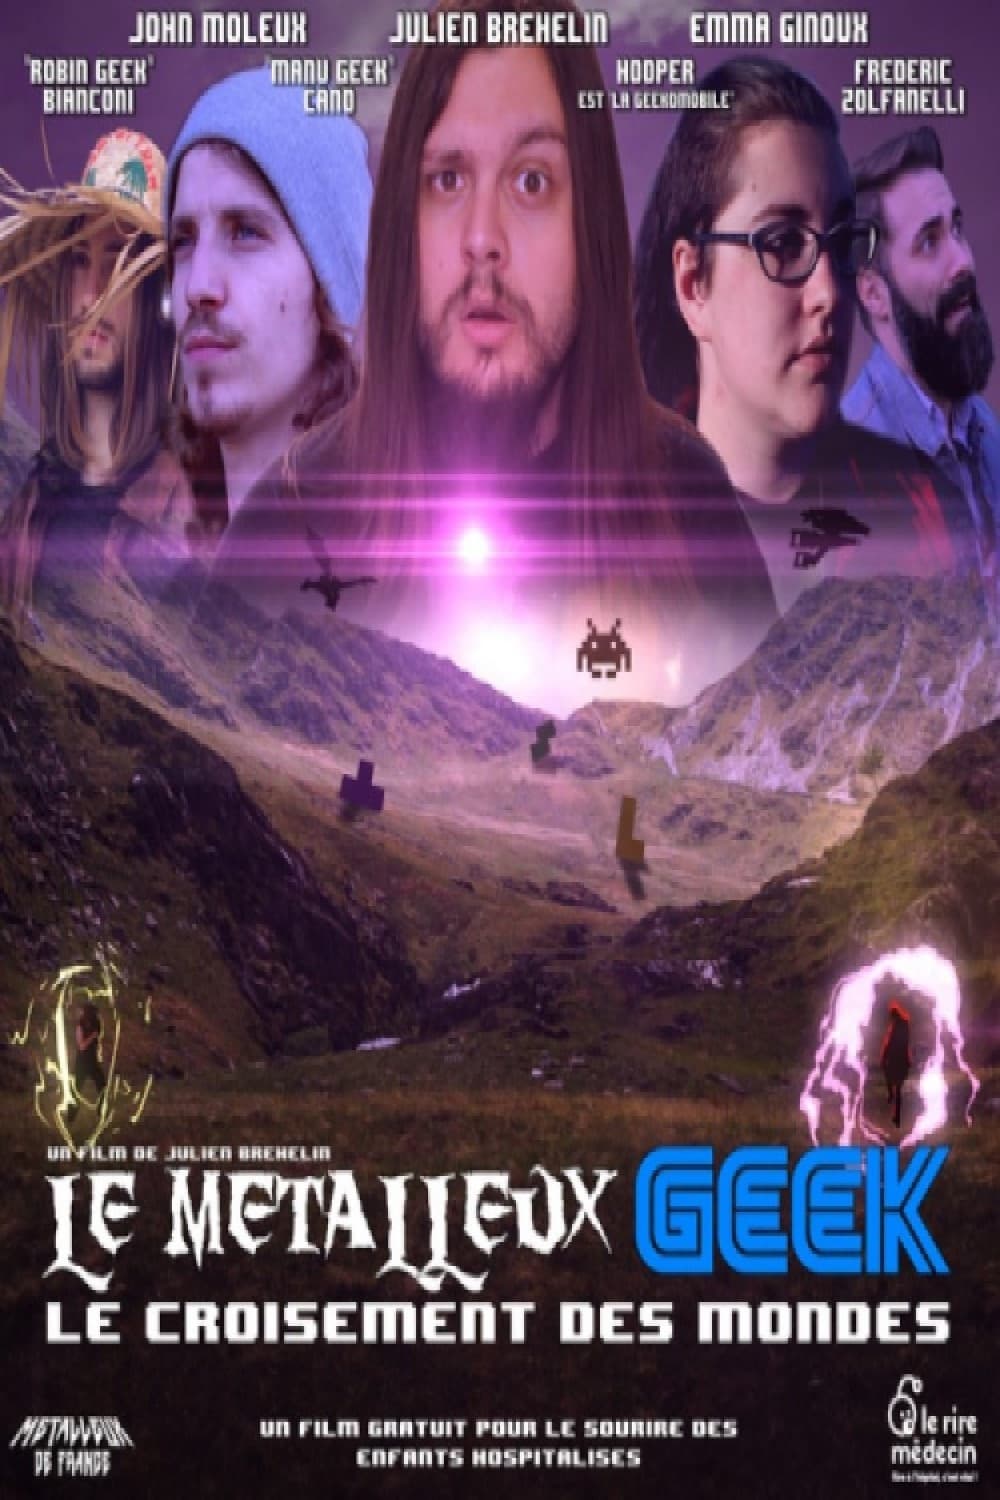 Le Métalleux Geek - Le Croisement des Mondes